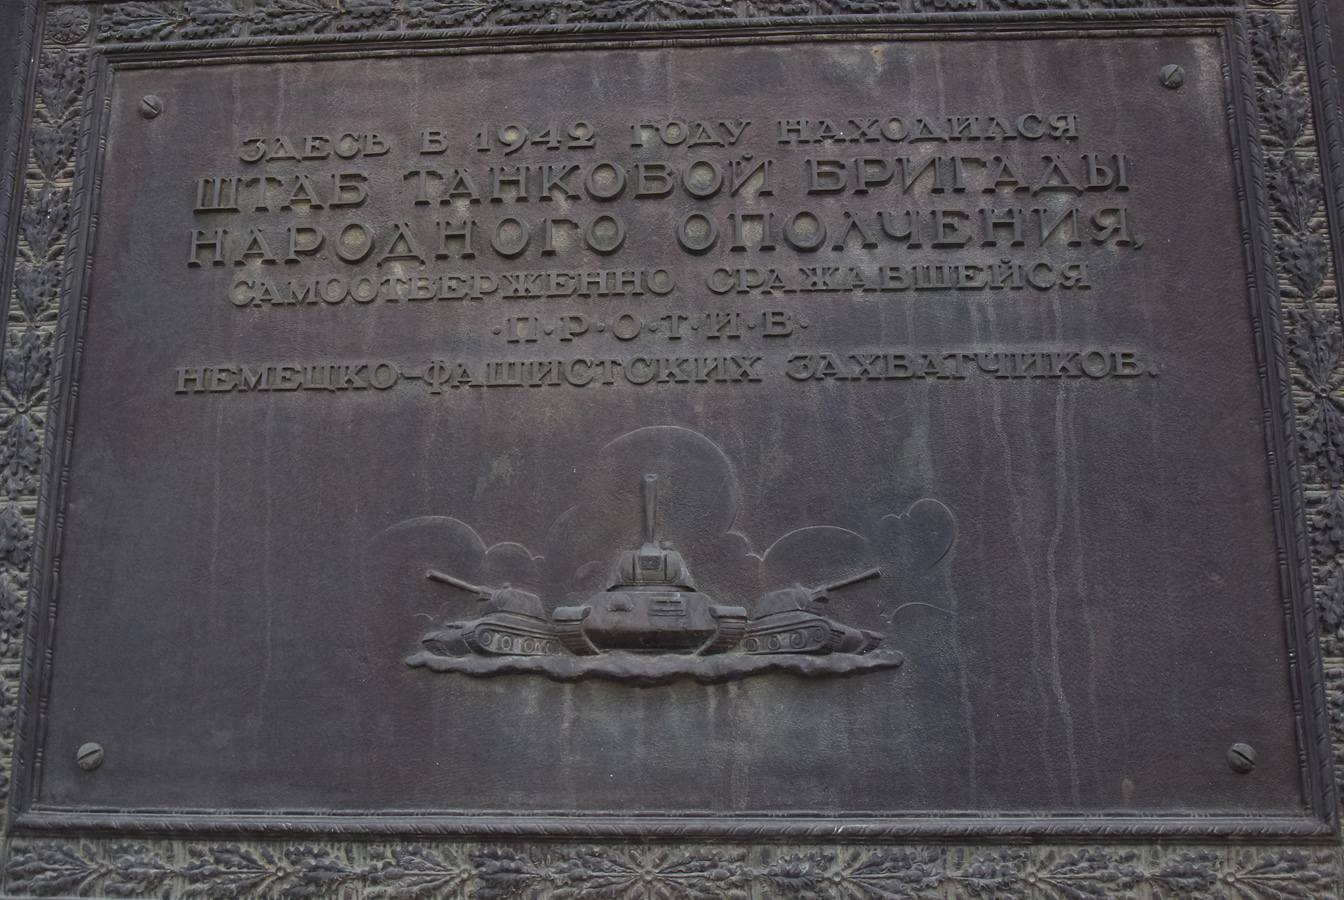 Wołgograd, Проспект имени Ленина, 215. Wołgograd — Memorial plaques